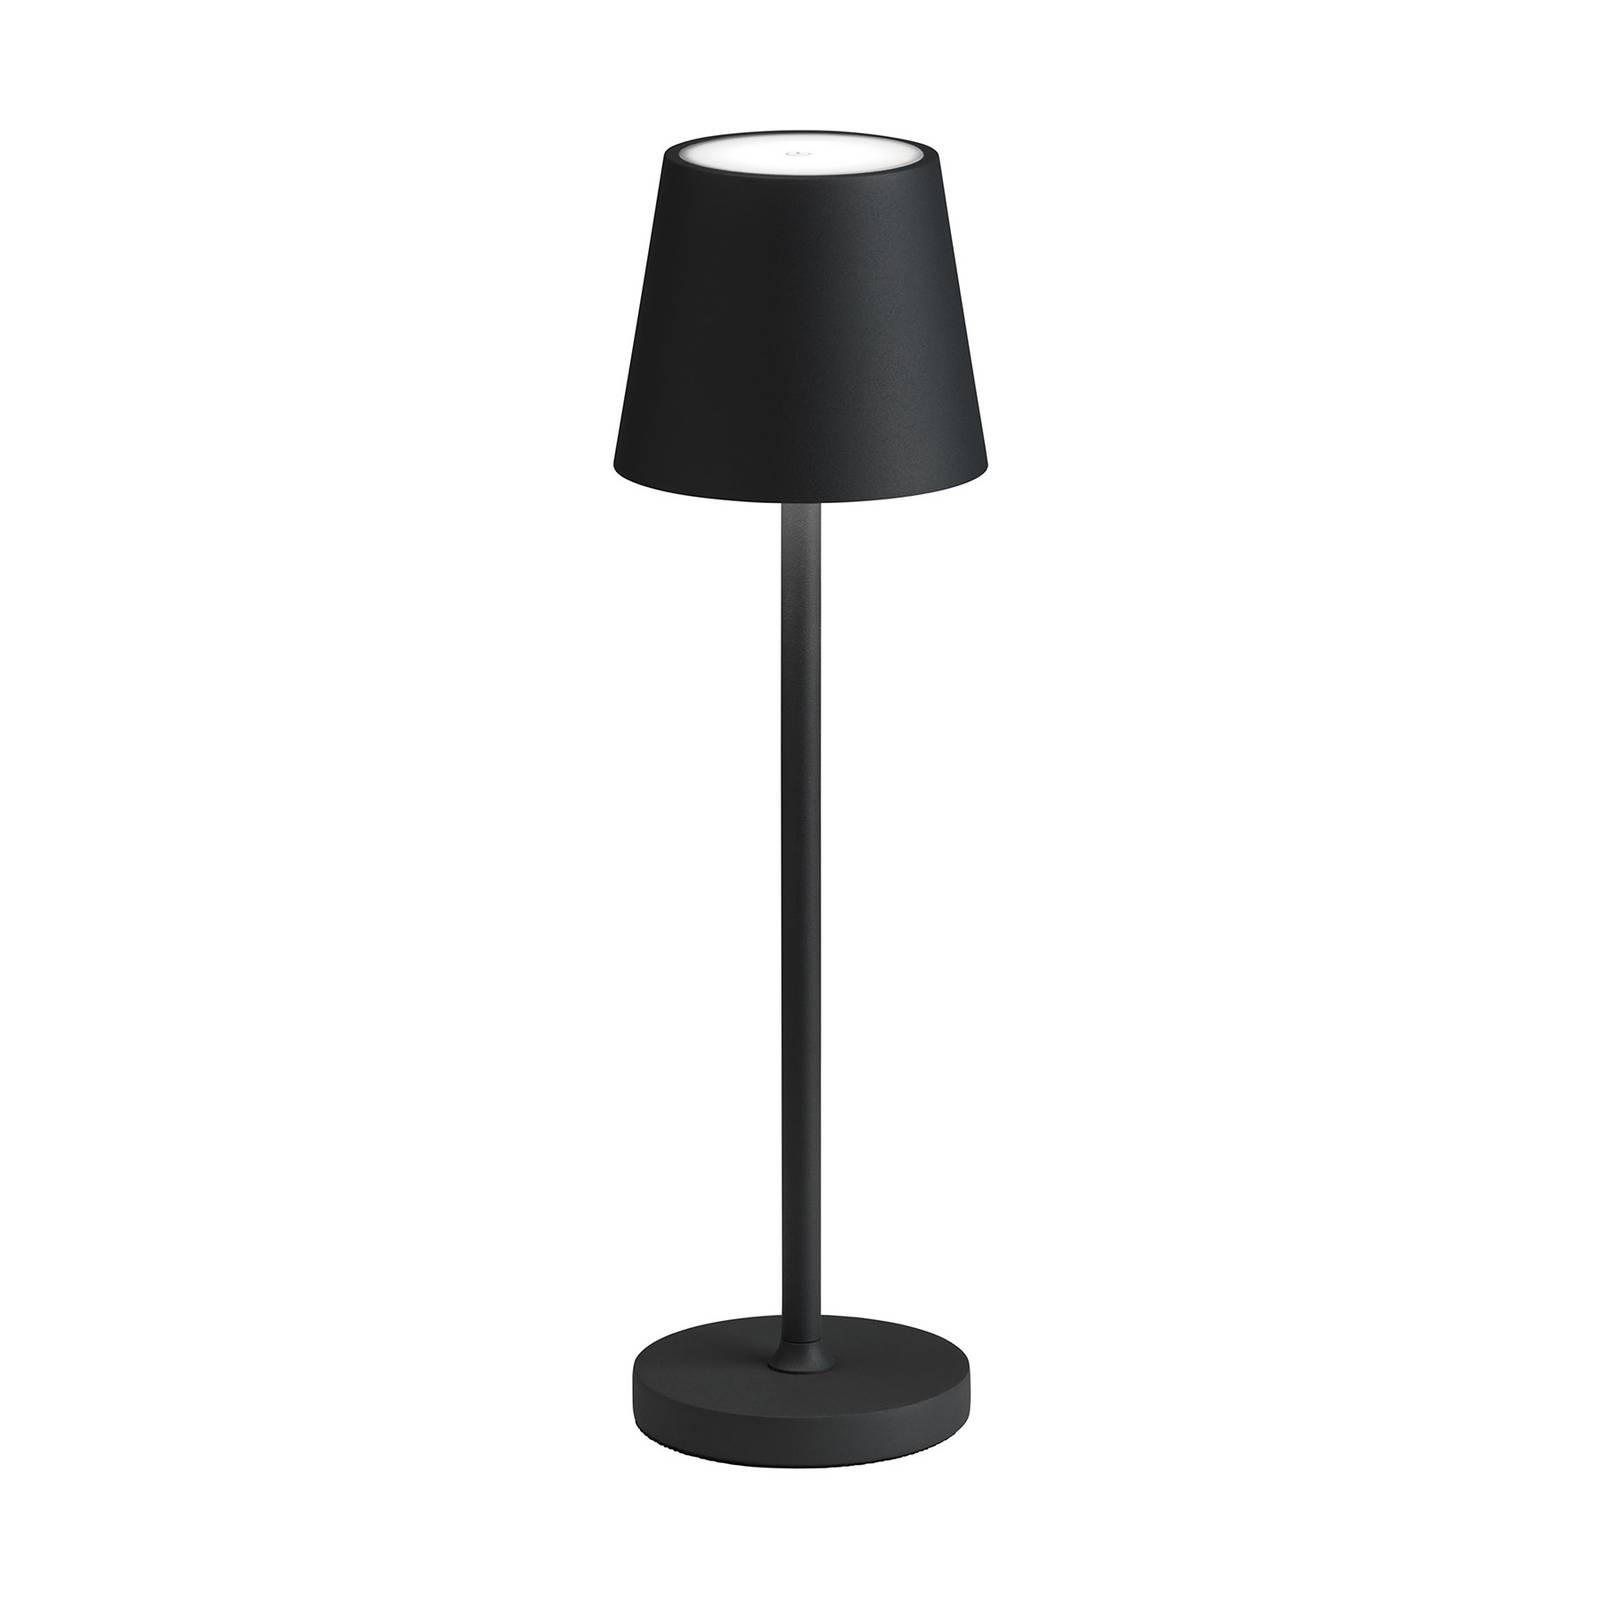 Image of LCD Lampe de table LED 5097 batterie IP54 dim noire 4260277681098